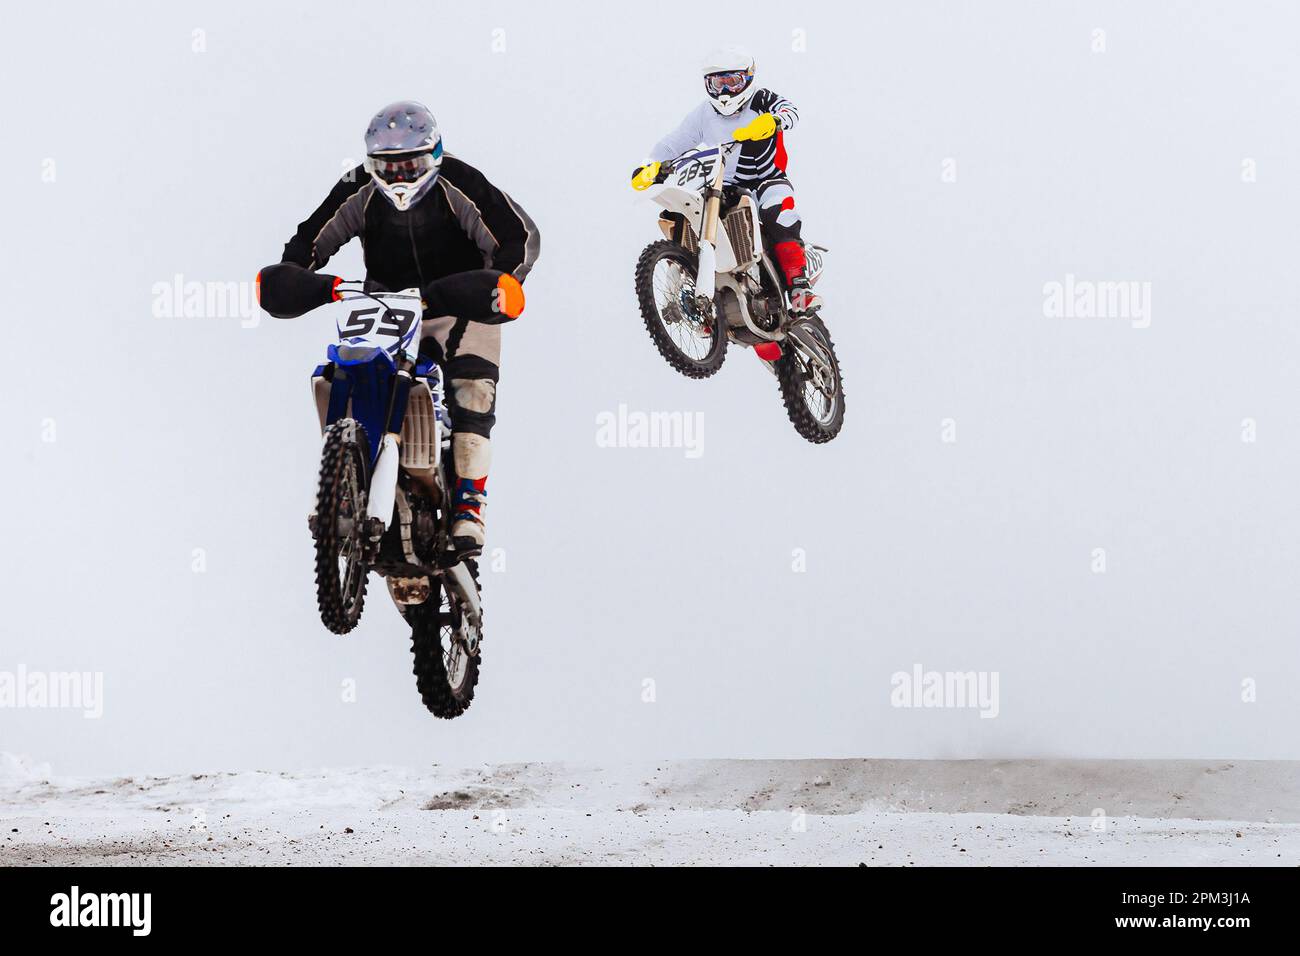 Zwei Motorsportfahrer, die gemeinsam auf einem verschneiten Sprungbrett springen, im Winter Off-Road-Motorradrennen Stockfoto